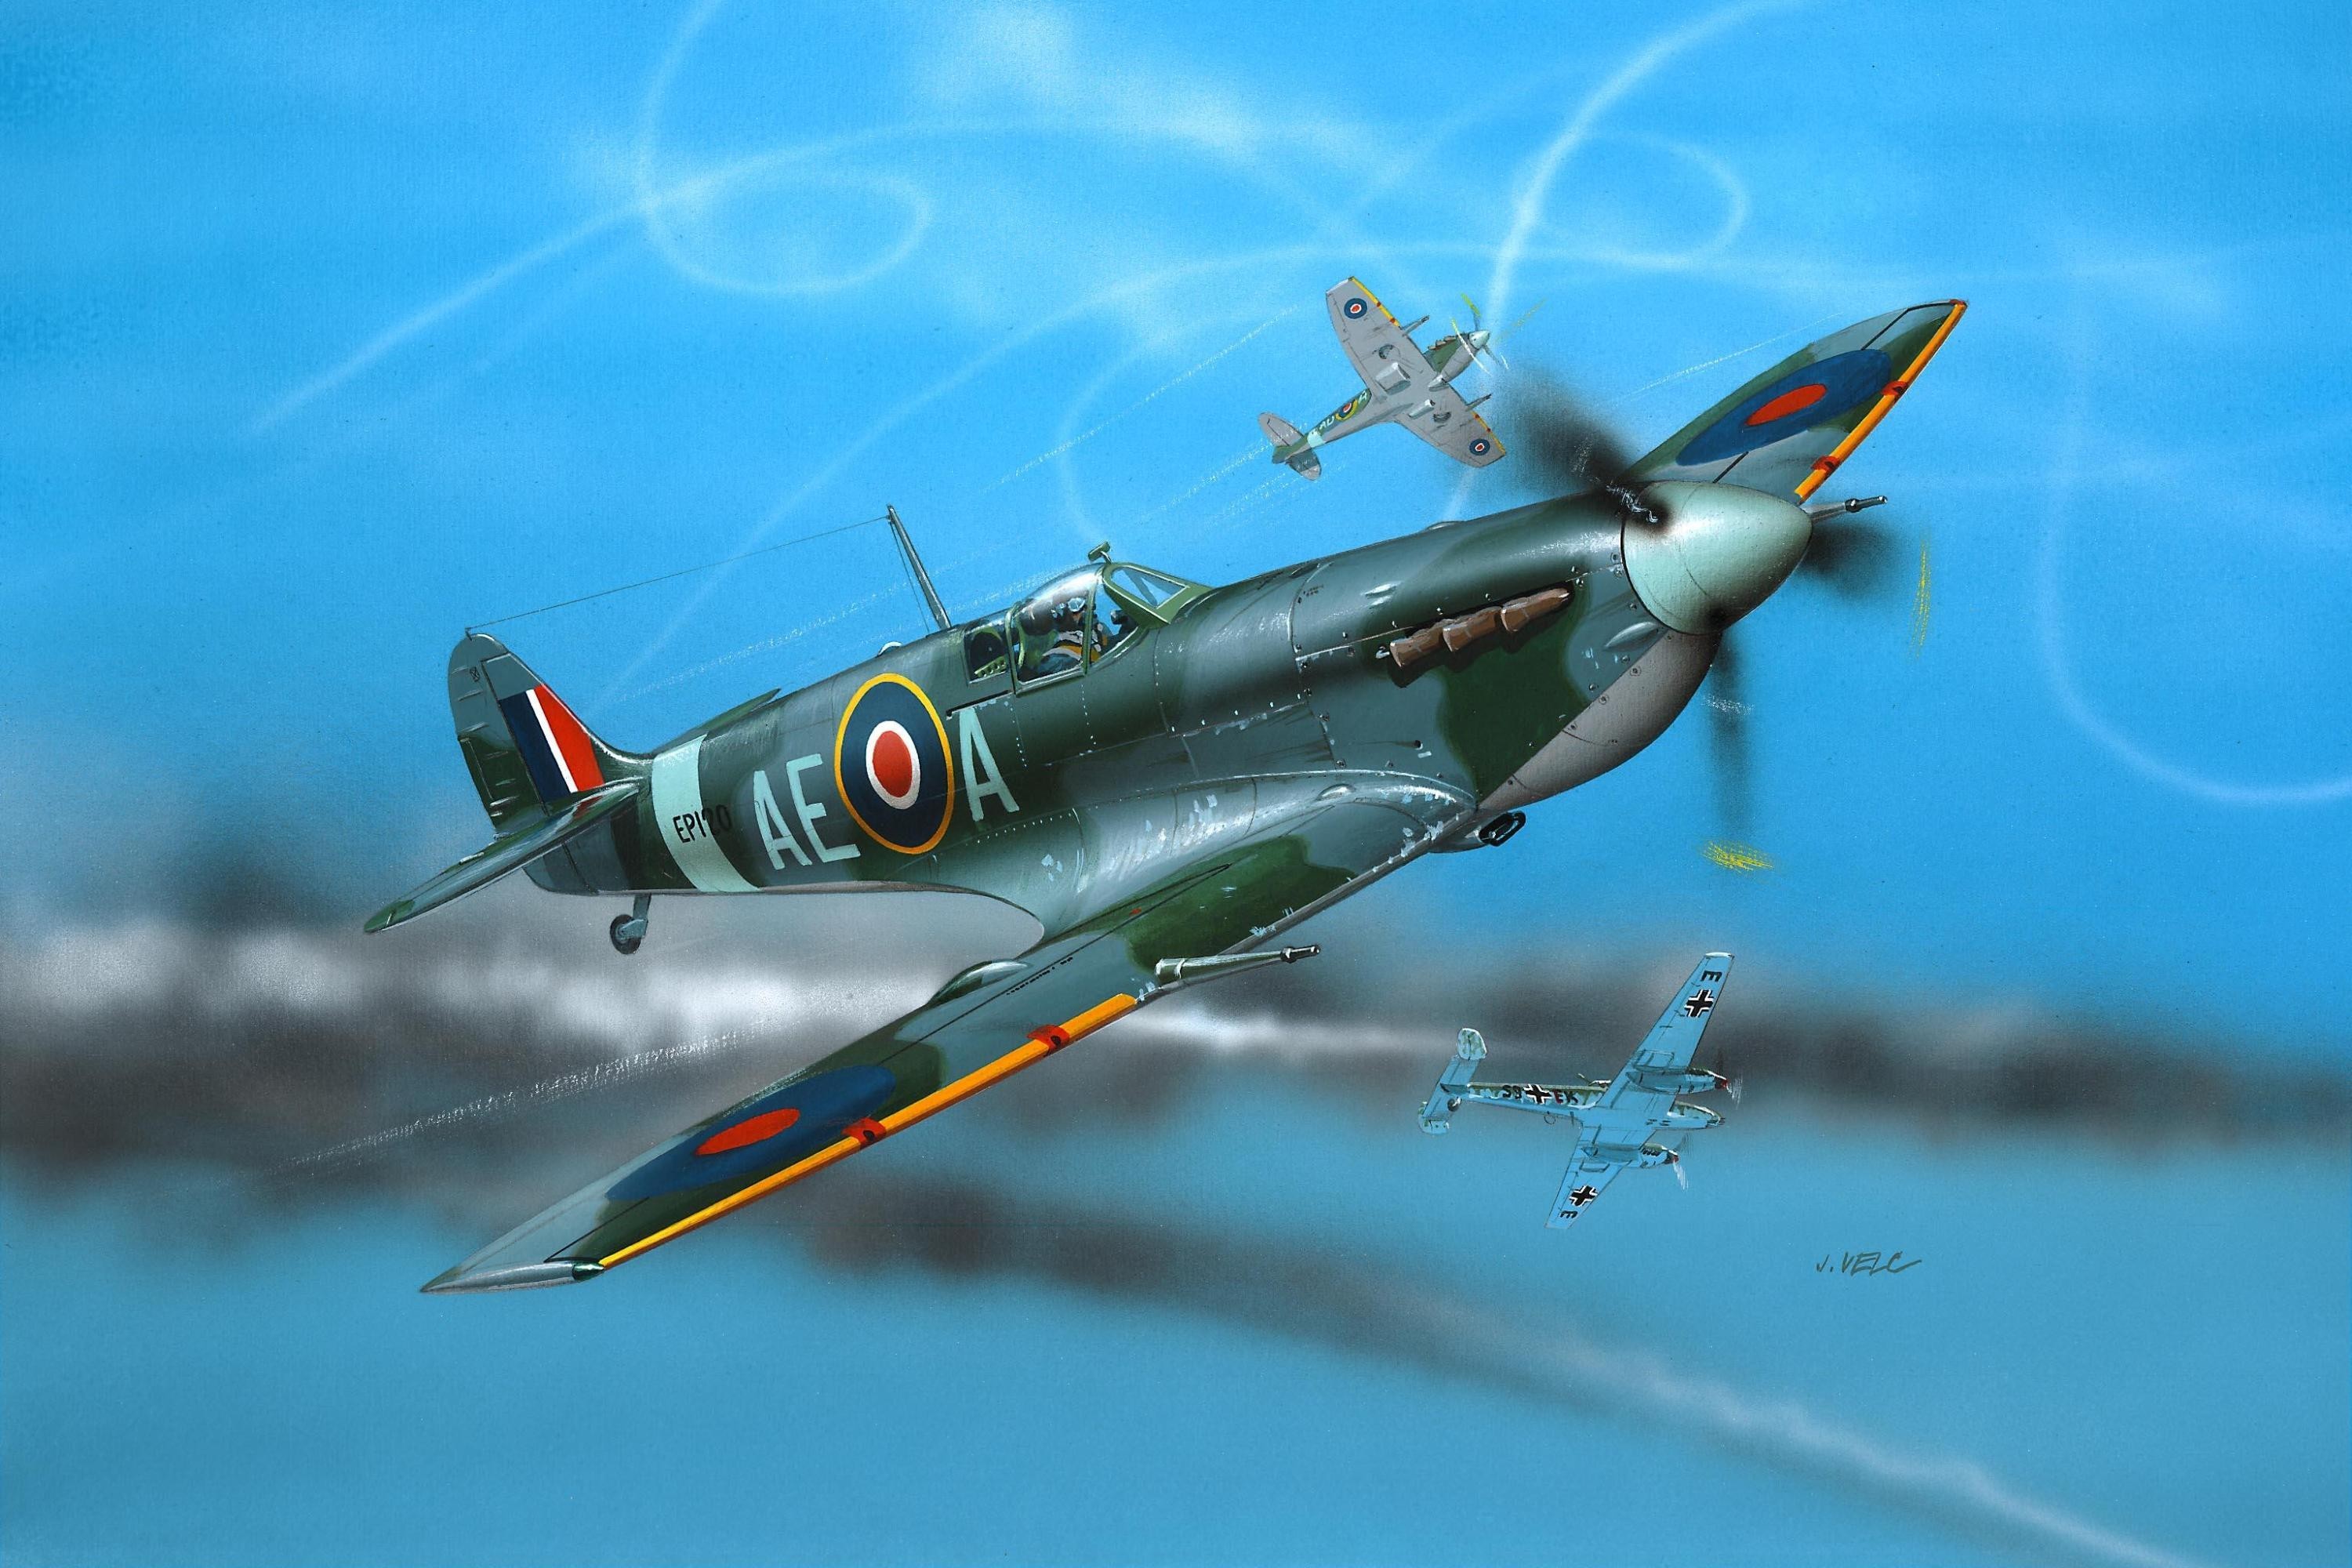 Ww2 Aircraft Spitfire